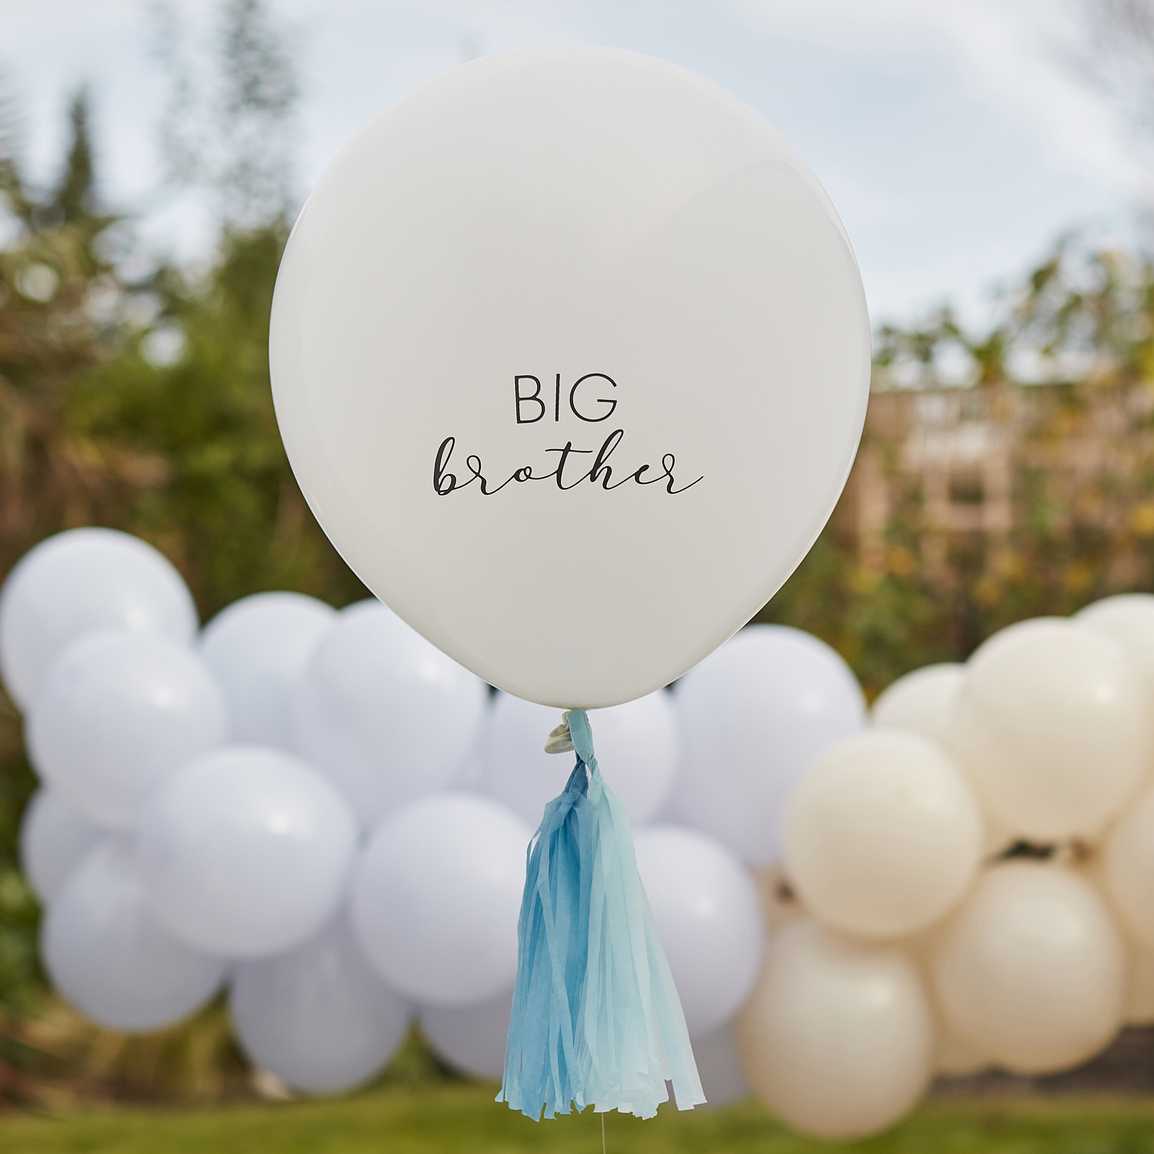 Ballon big brother geboorte zwangerschap genderreveal feest decoratie photoshoot